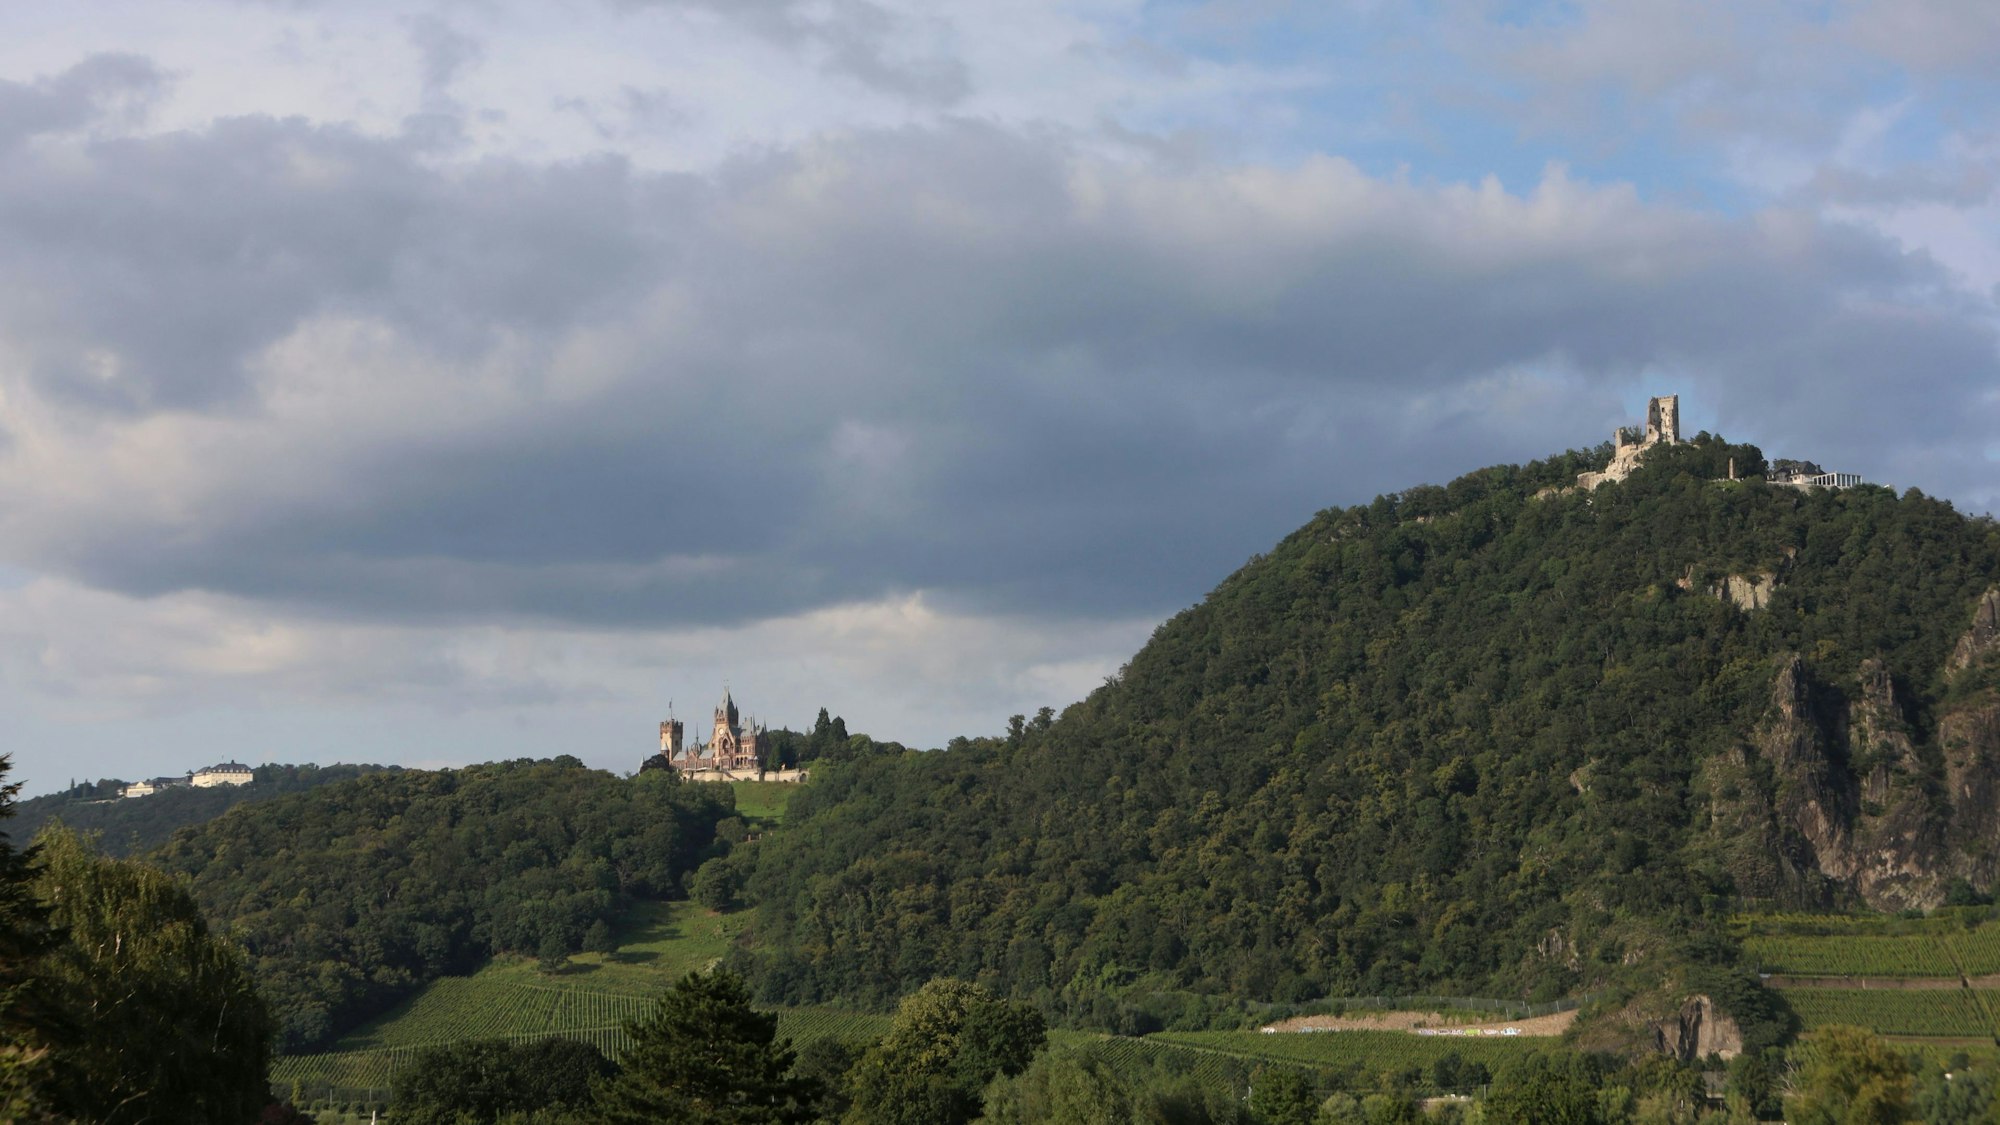 Eine Hügelkette mit grünen Bäumen und Weinbergen. Das Hotel auf dem Petersberg, Schloss Drachenburg und die Drachenfelsruine sind zu sehen.